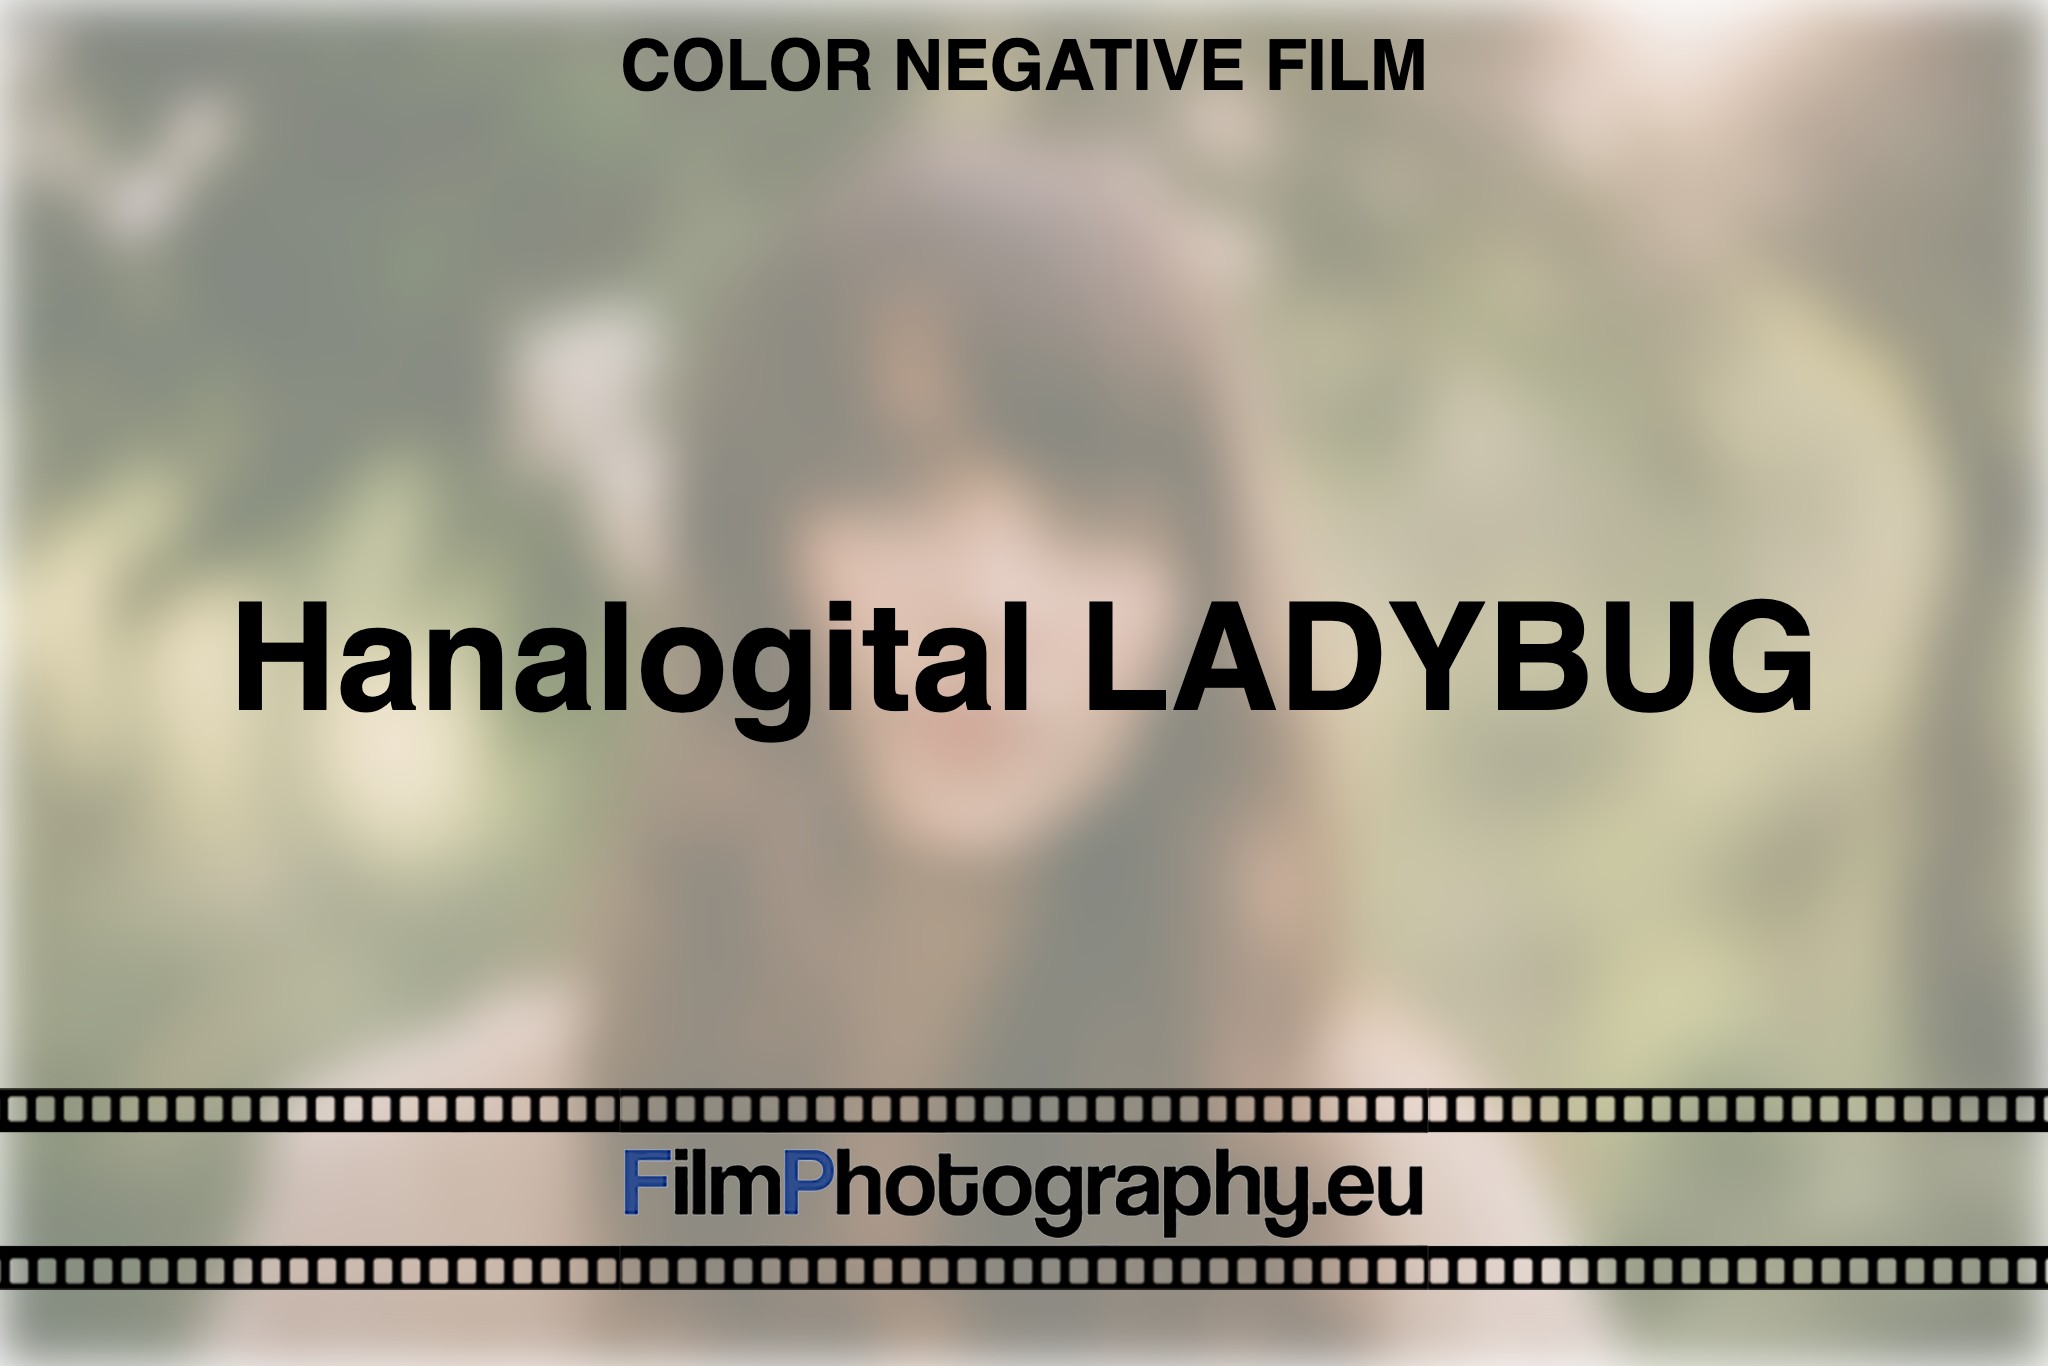 hanalogital-ladybug-color-negative-film-bnv